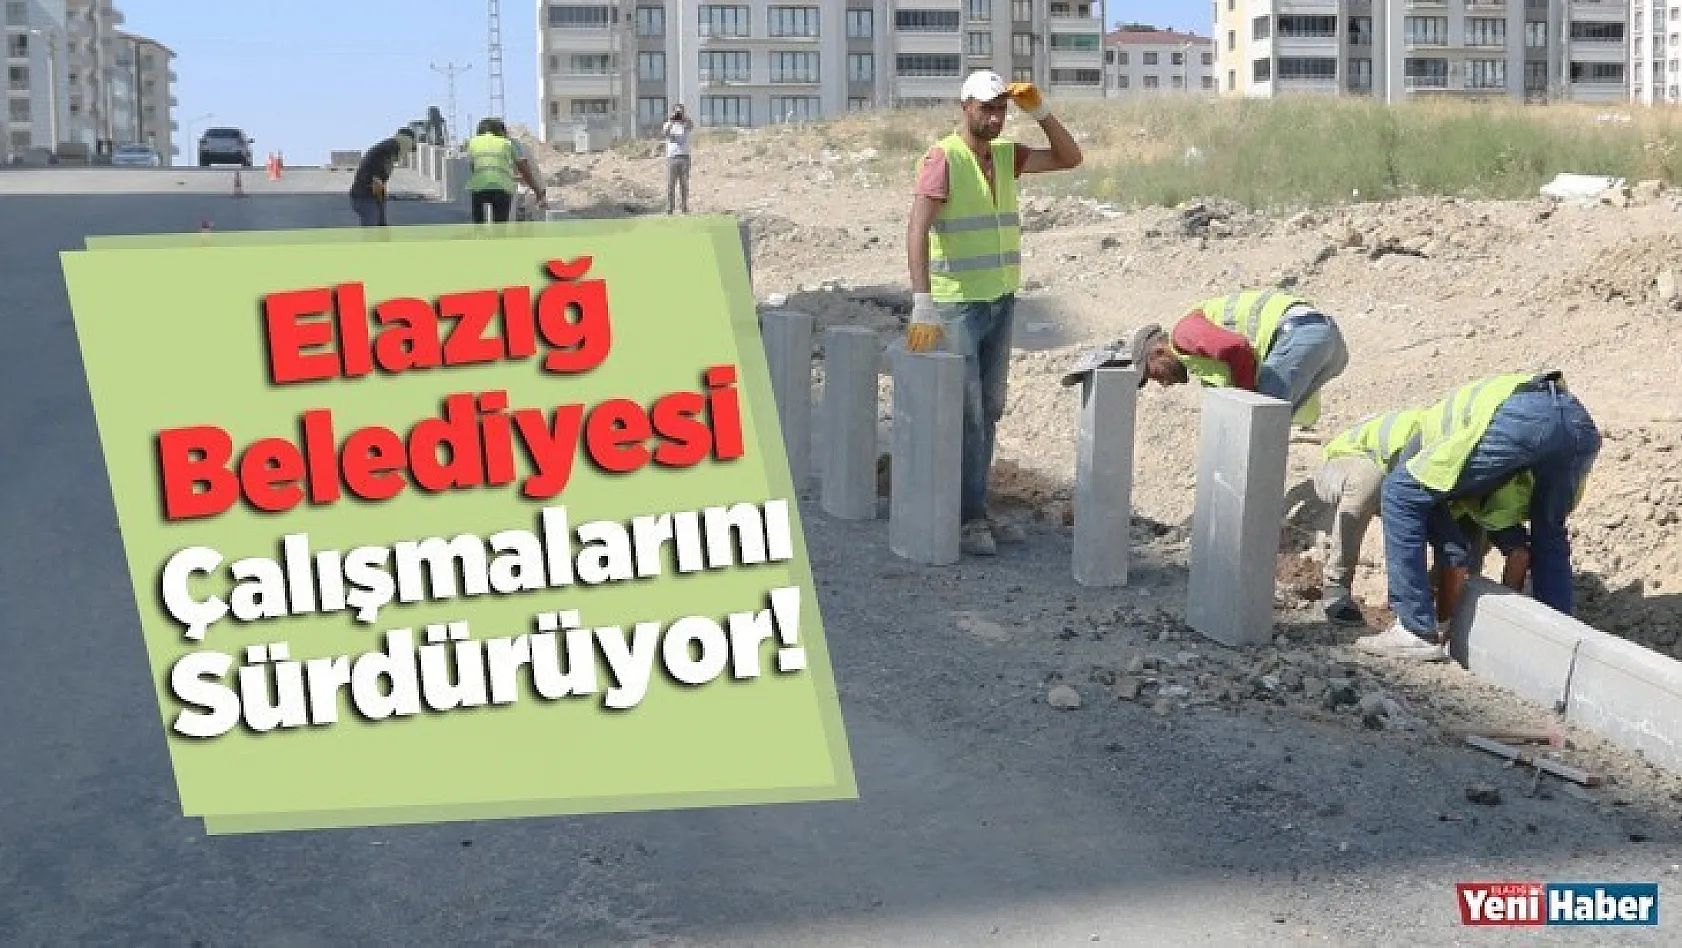 Elazığ Belediyesi Çalışmalarını Sürdürüyor!